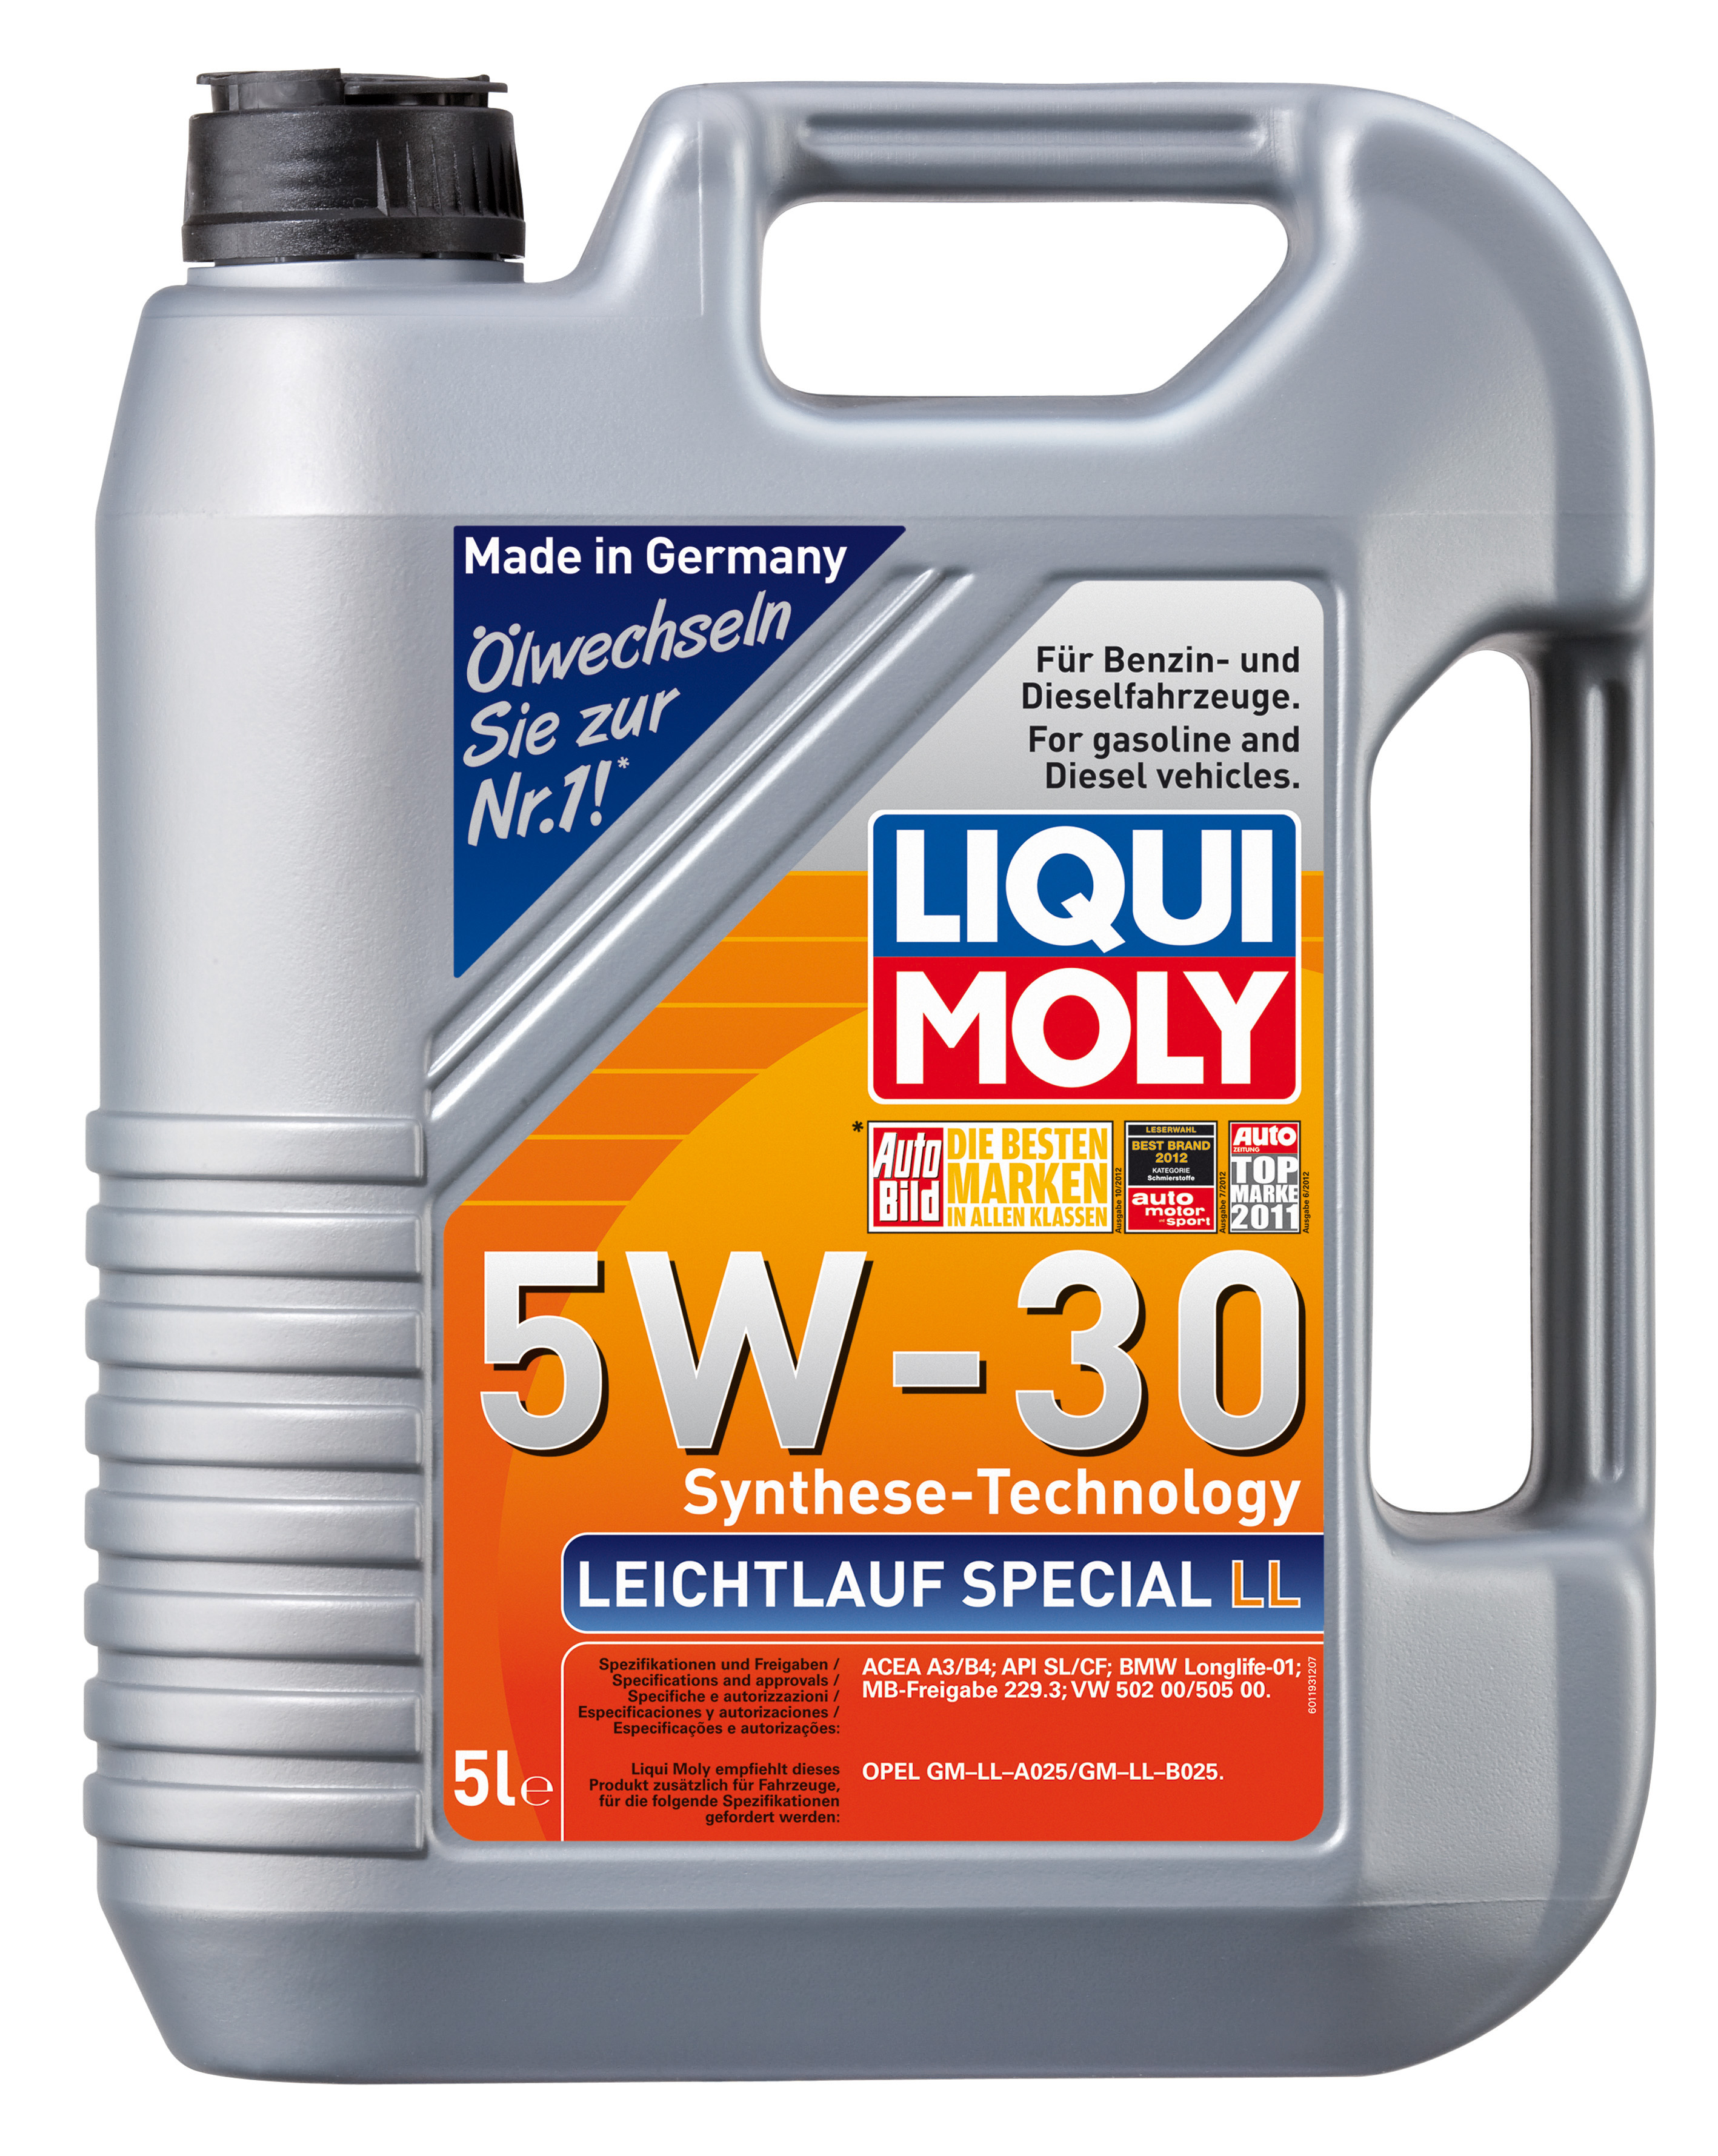 Масло ликви моли артикул. Liqui Moly 5w30 Special Tec 5л. Liqui Moly SAE 5w-30. Ликви моли 5w30 ll. 8055 Liqui Moly Special Tec ll 5w30 CF/SL а3/в4 5л синтетическое.